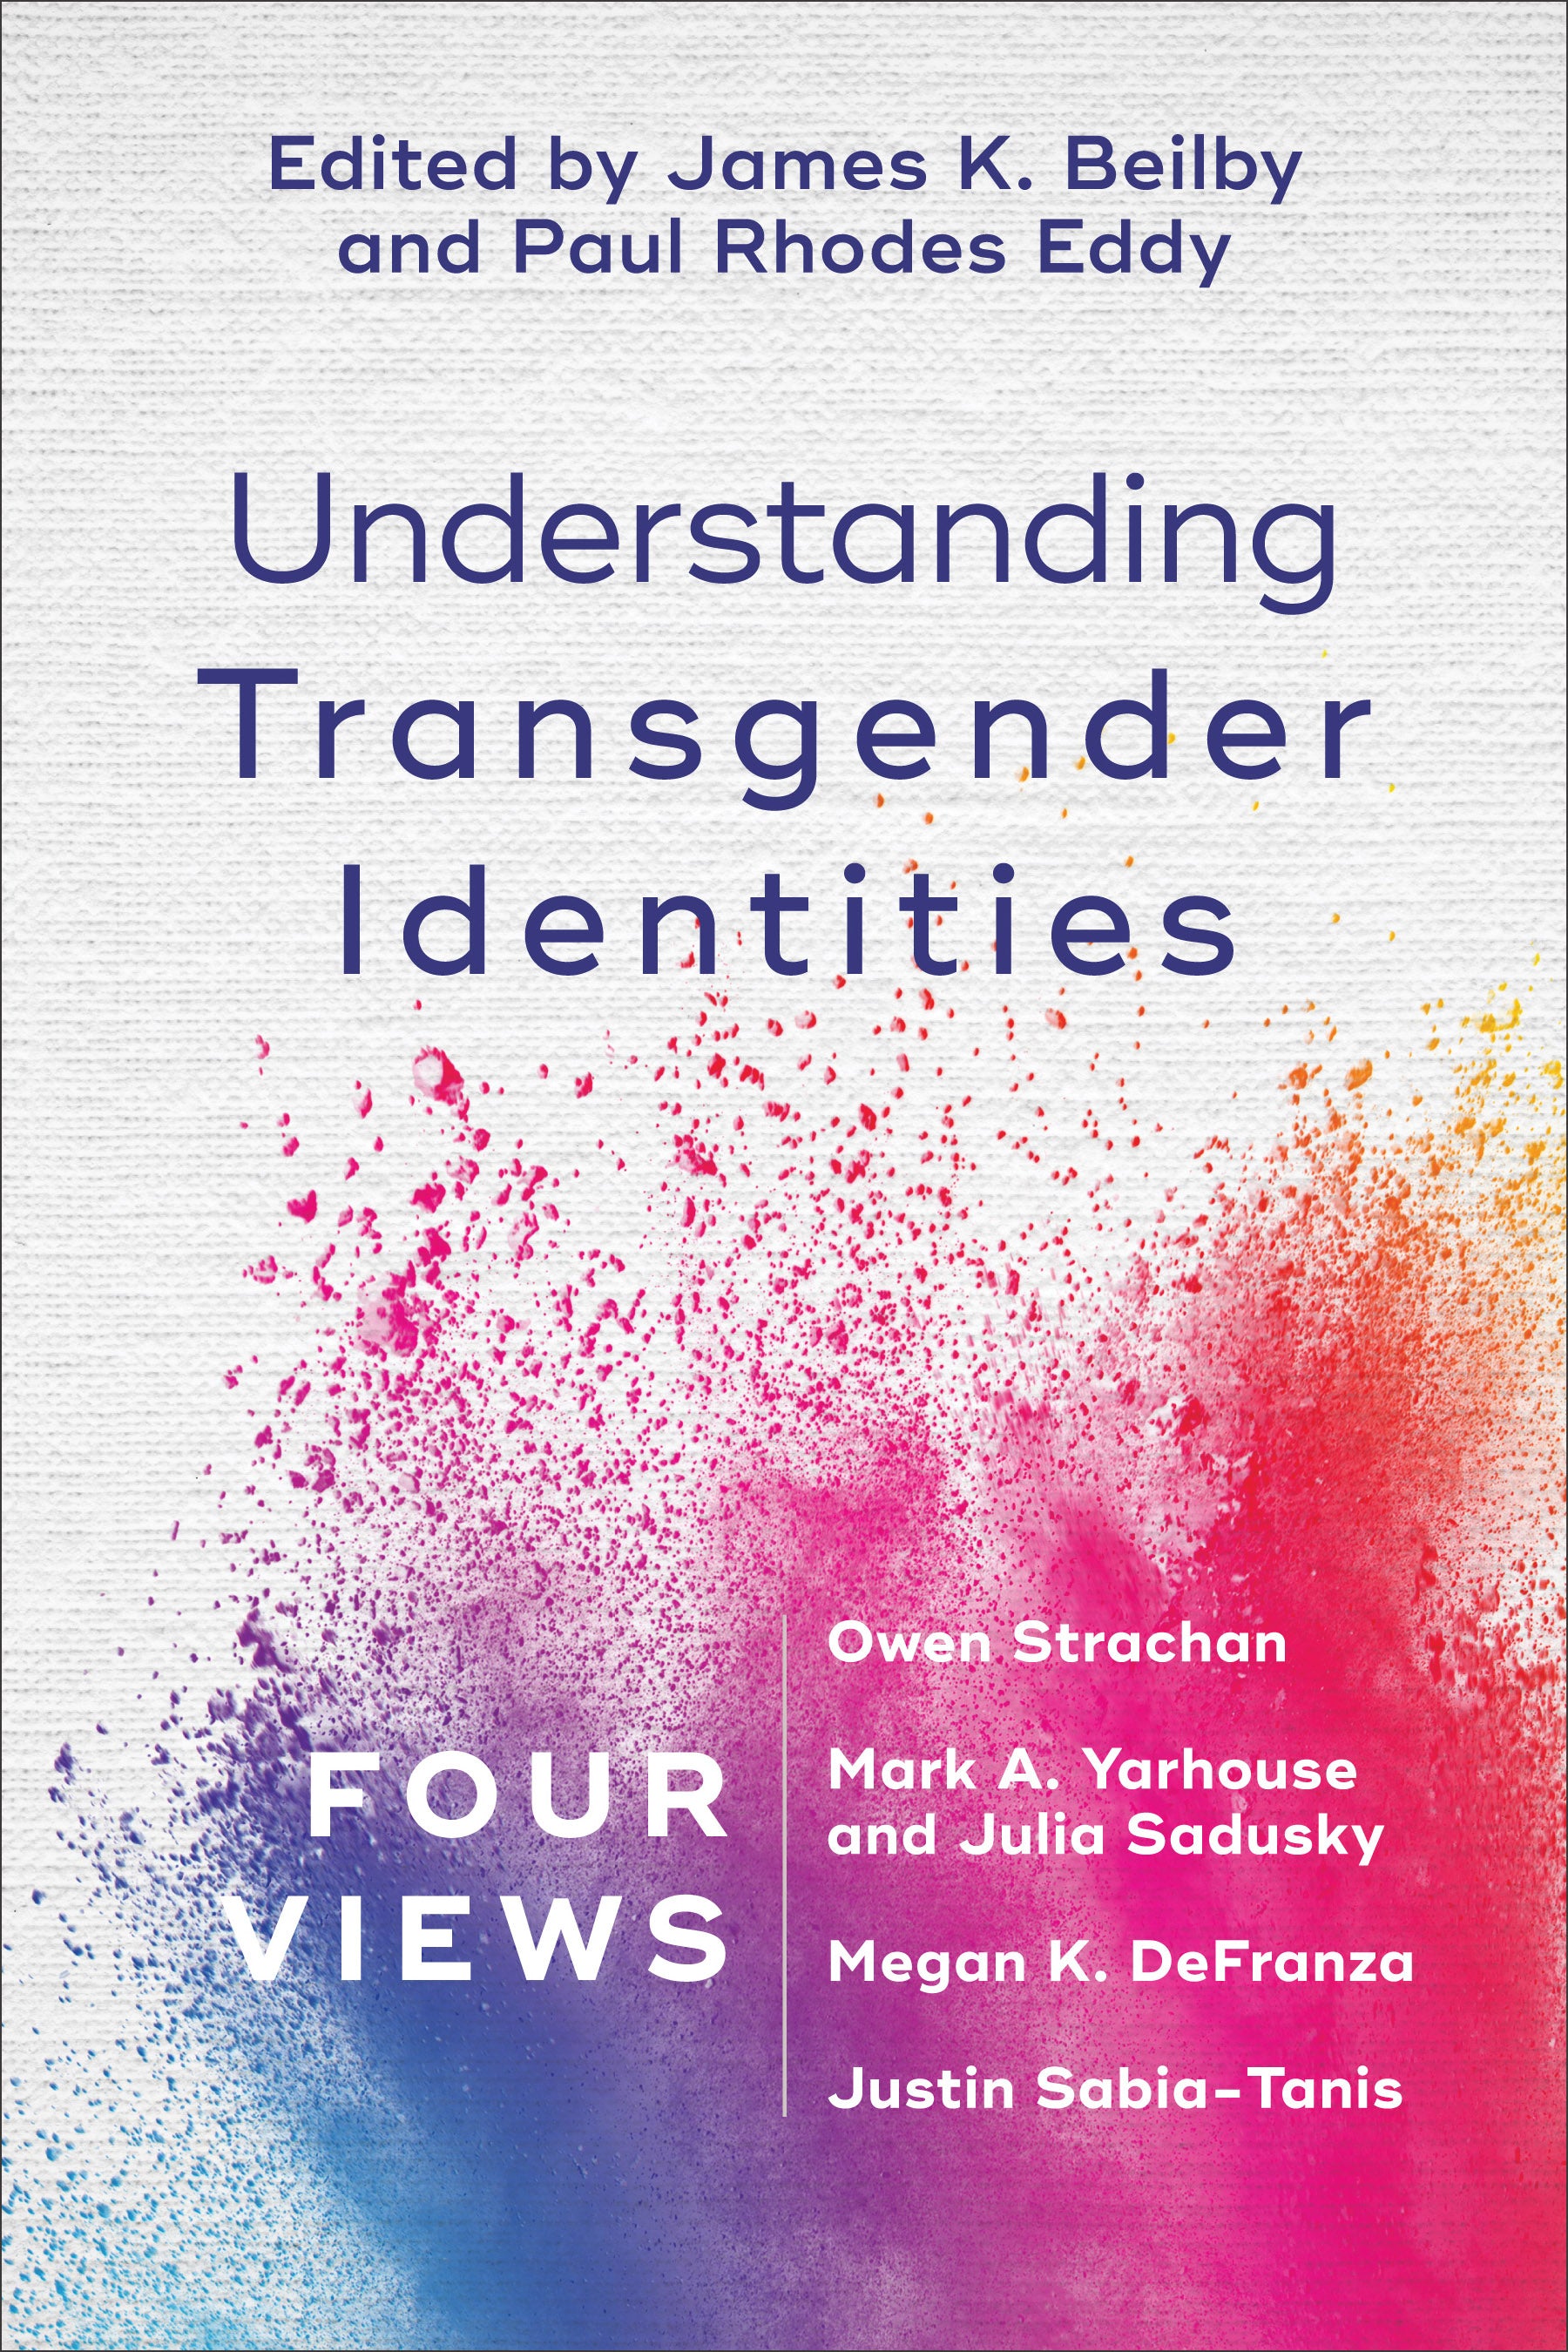 Image of Understanding Transgender Identities other